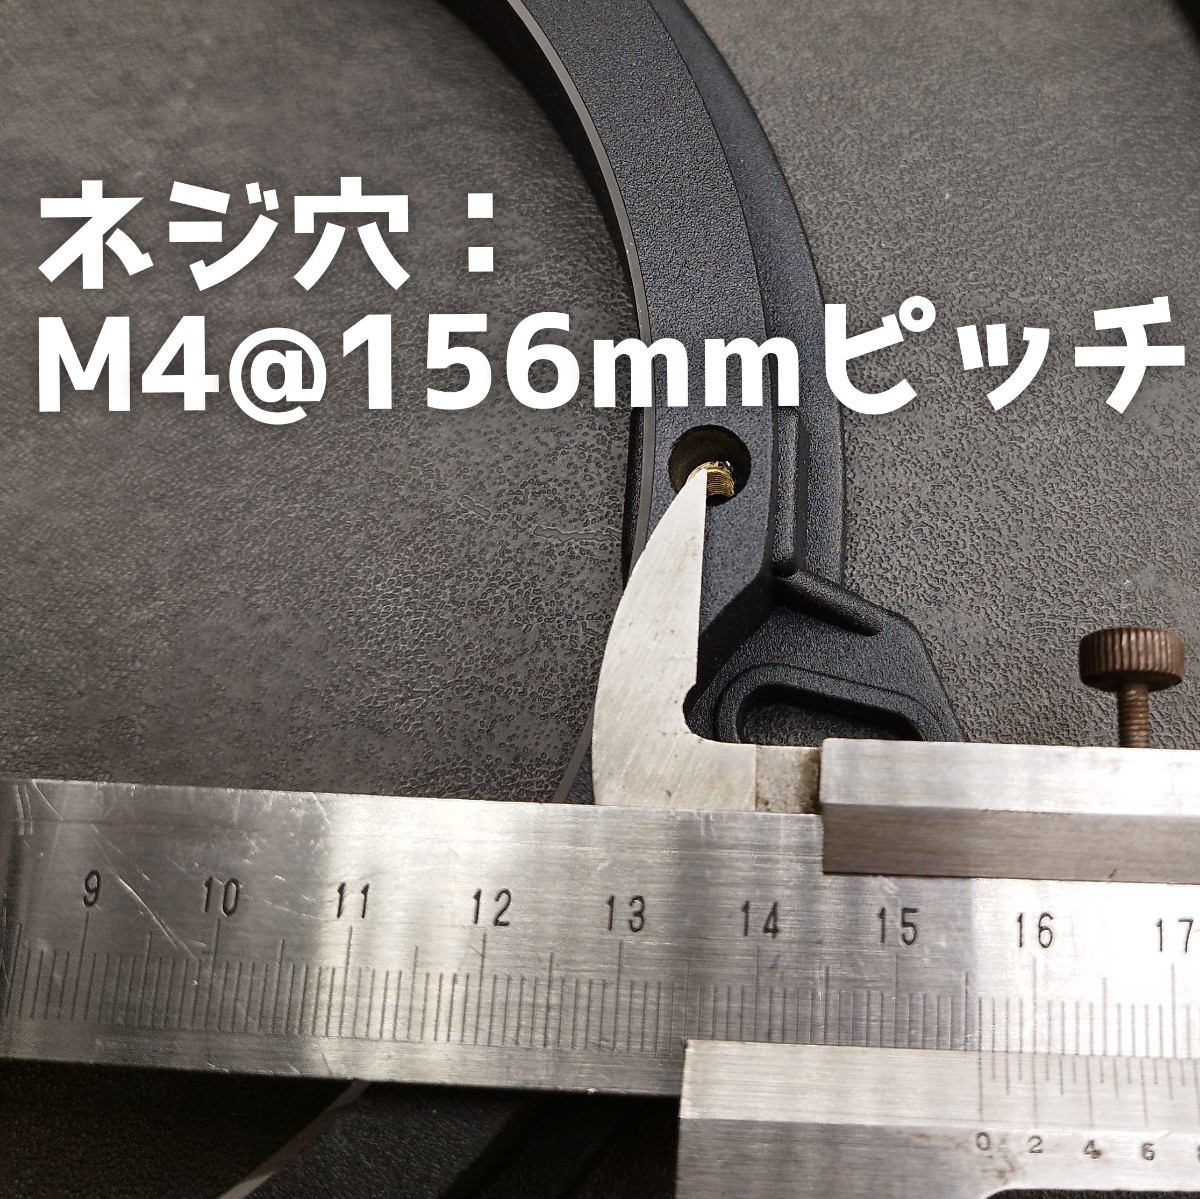 [ бесплатная доставка ] высококачественный звук [ metal дефлектор ] для Toyota gachigachi. aluminium дефлектор 6.5 дюймовый 17cm динамик изоляция динамик проставка 